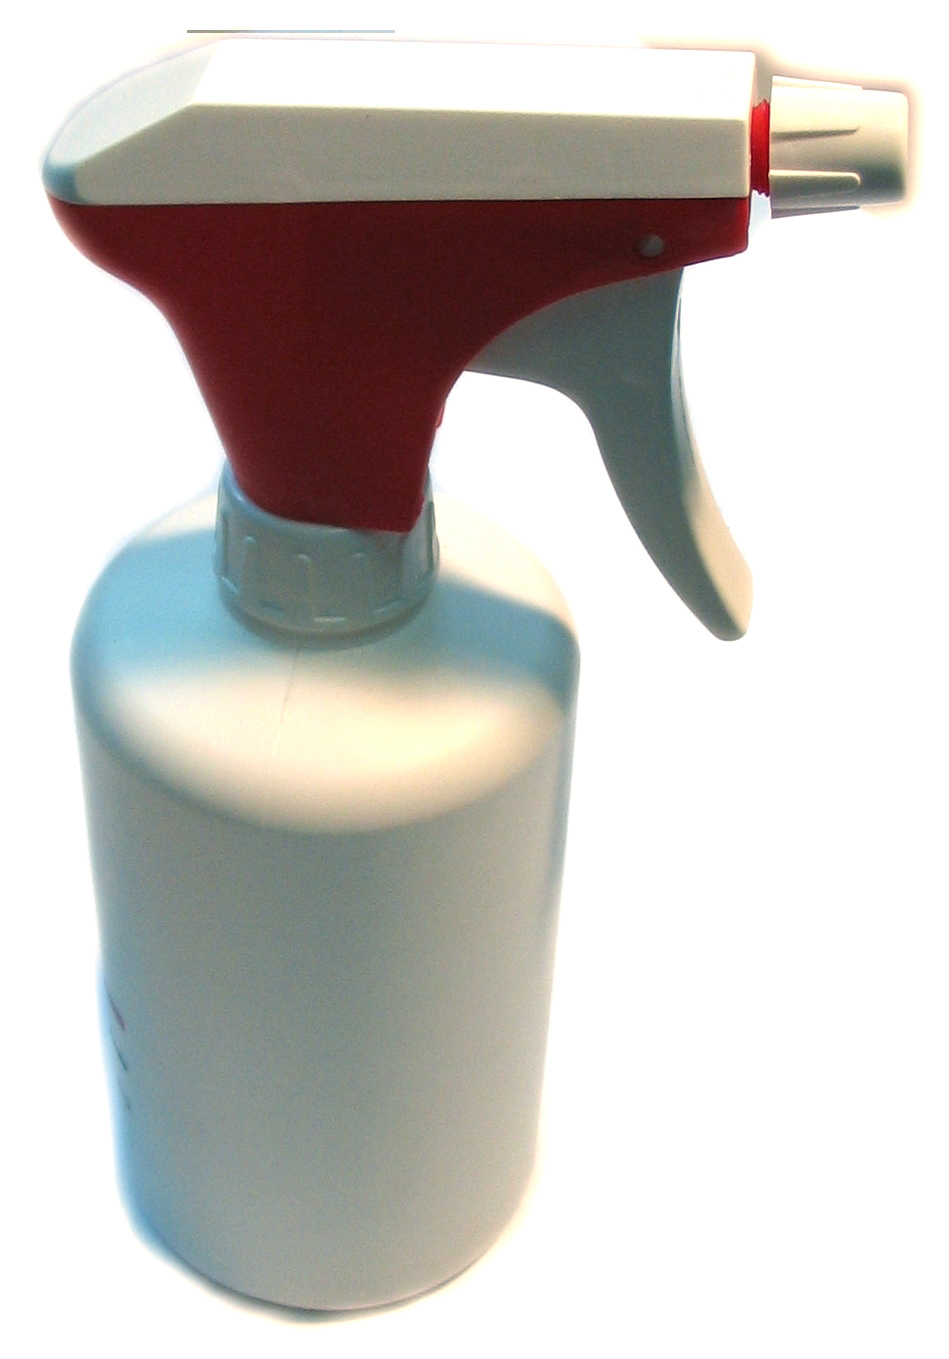 Leak spray bottle, round 500 ml